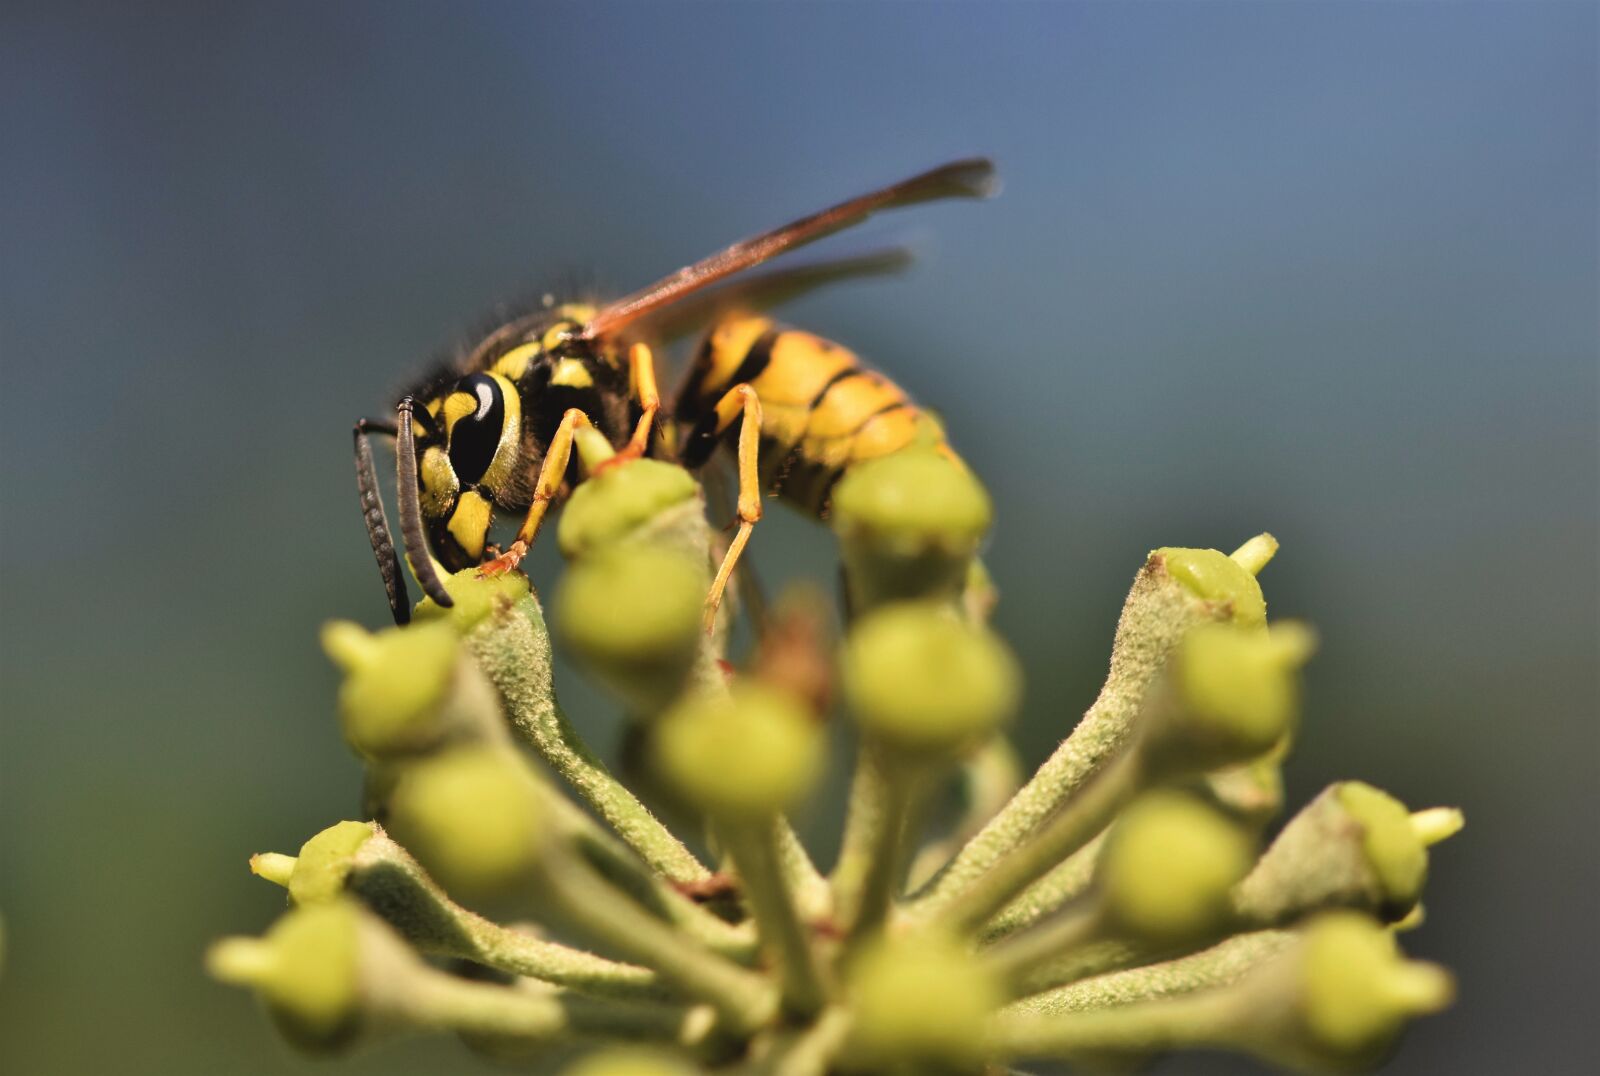 Nikon D7200 sample photo. Wasp, insect, entomology photography